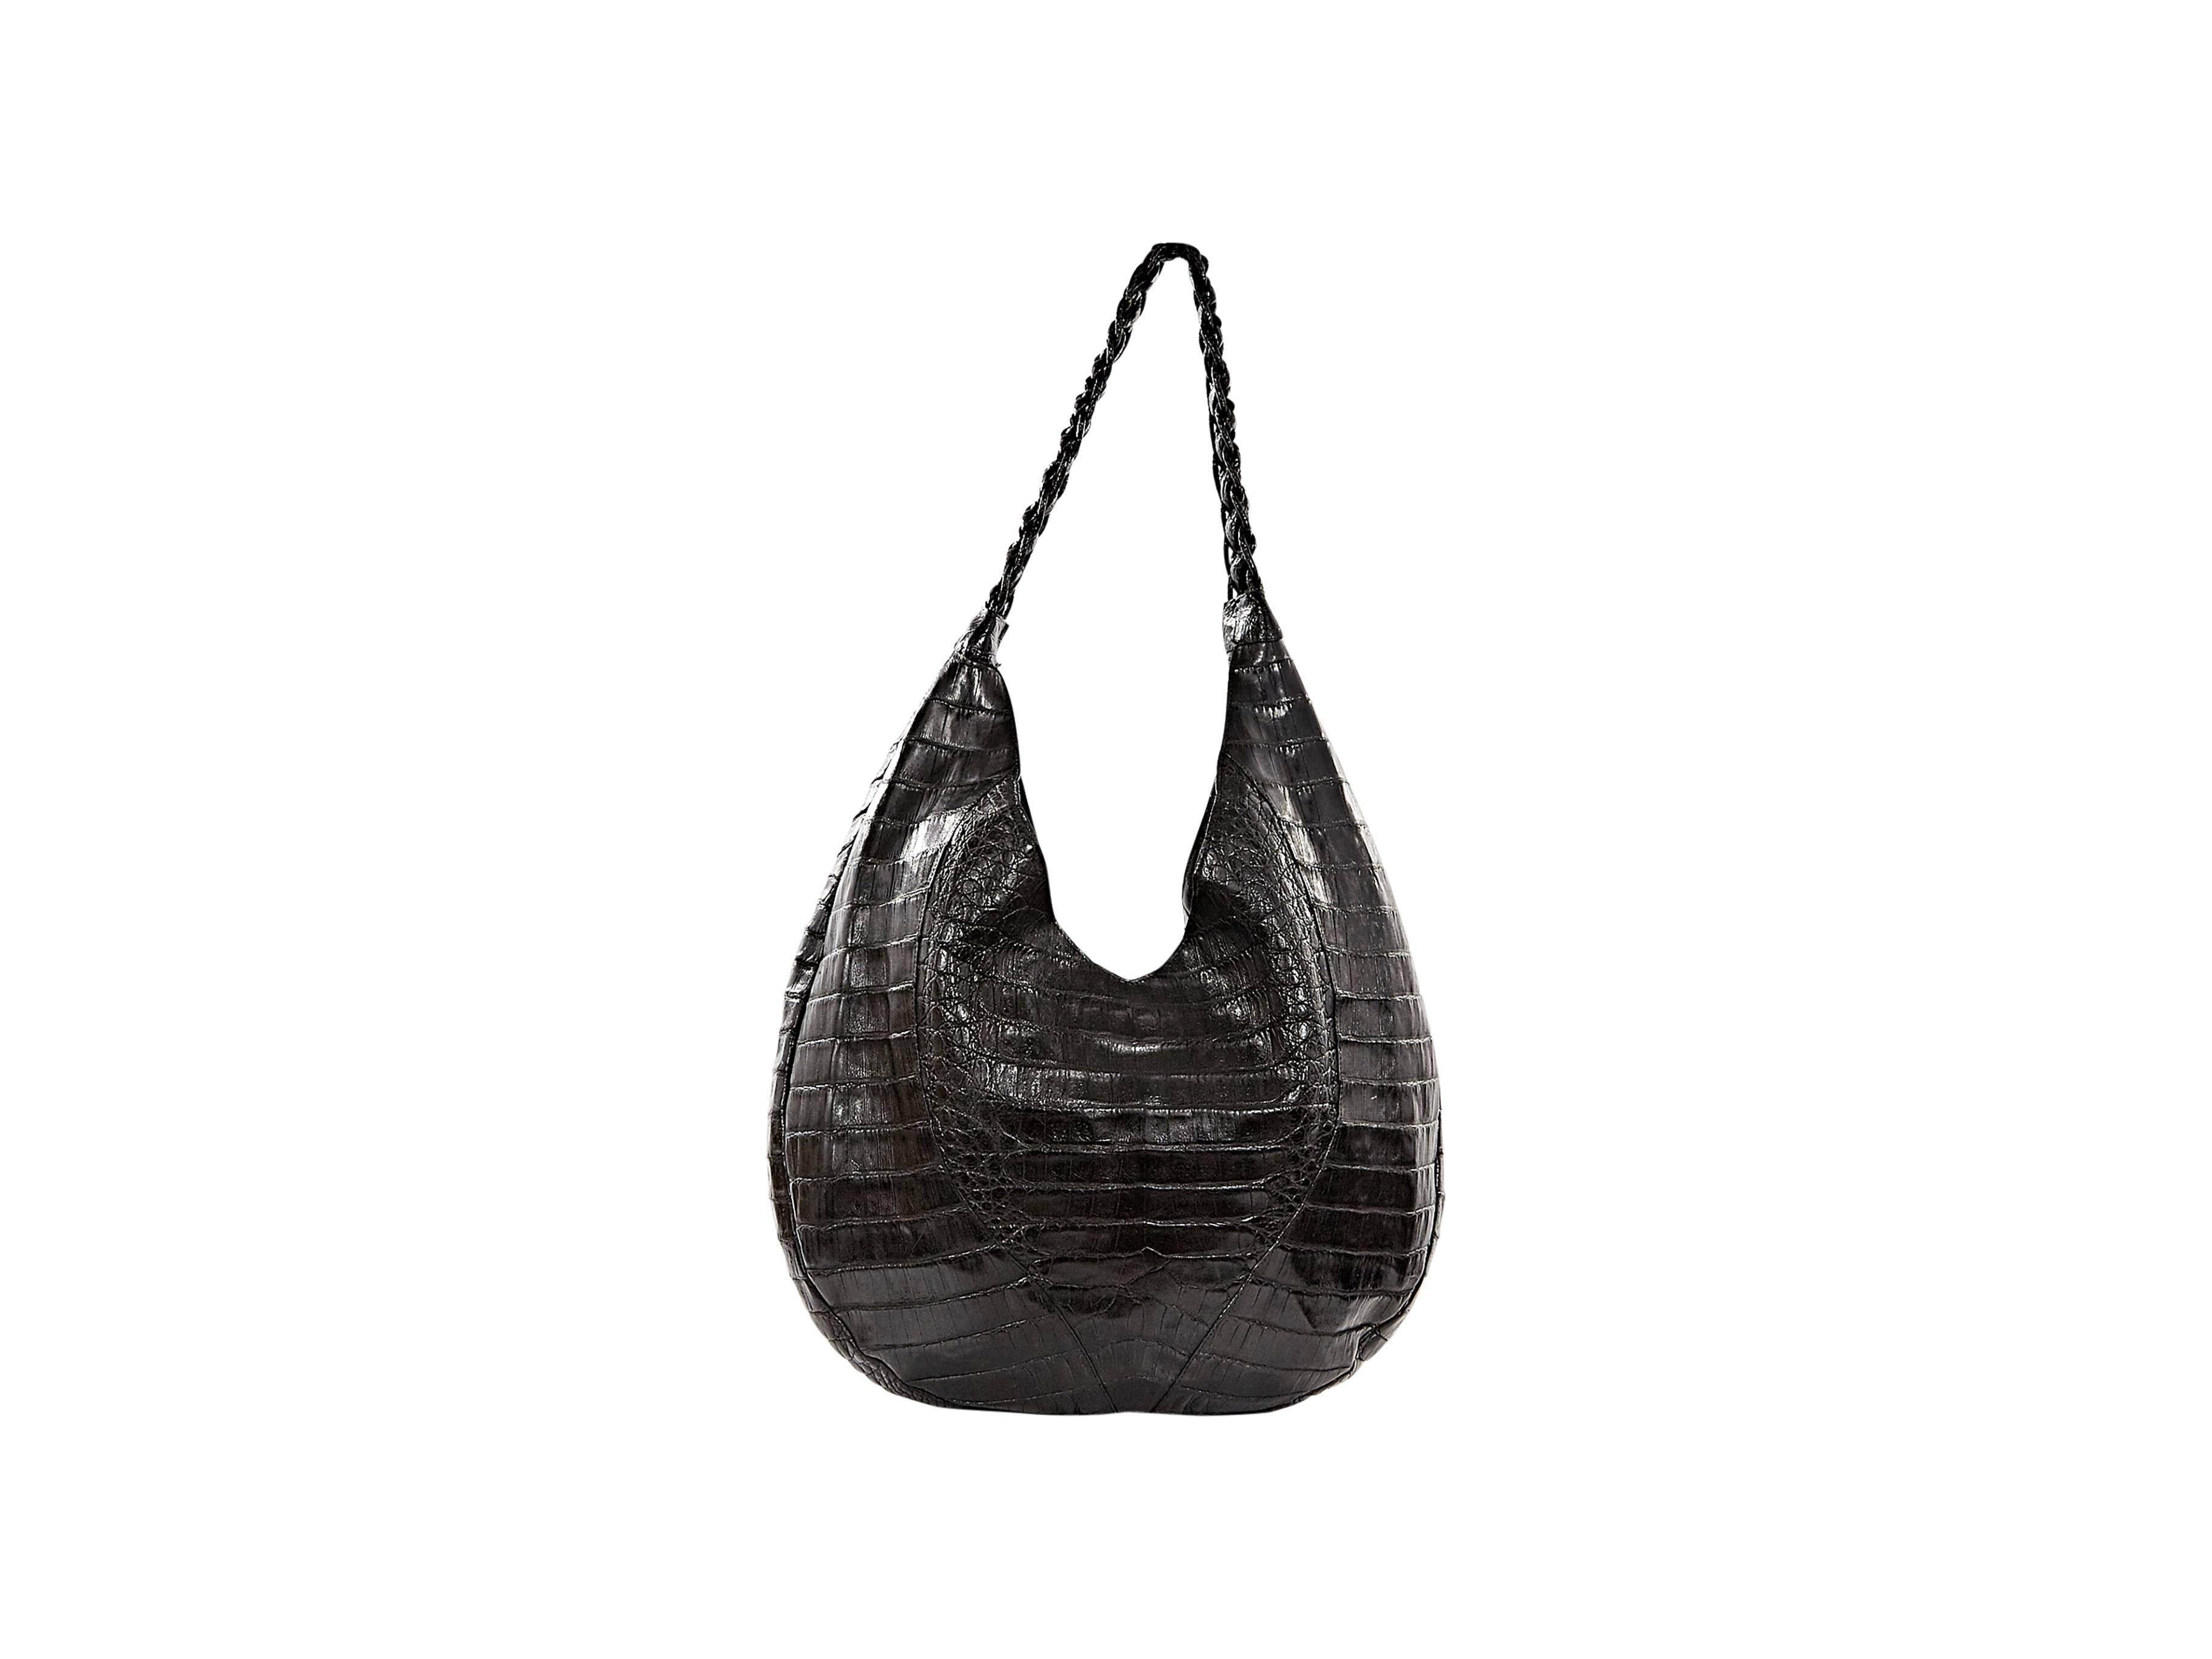 Exotic black crocodile hobo handbag by Nancy Gonzalez.  Single shoulder strap.  Concealed slide pocket. 